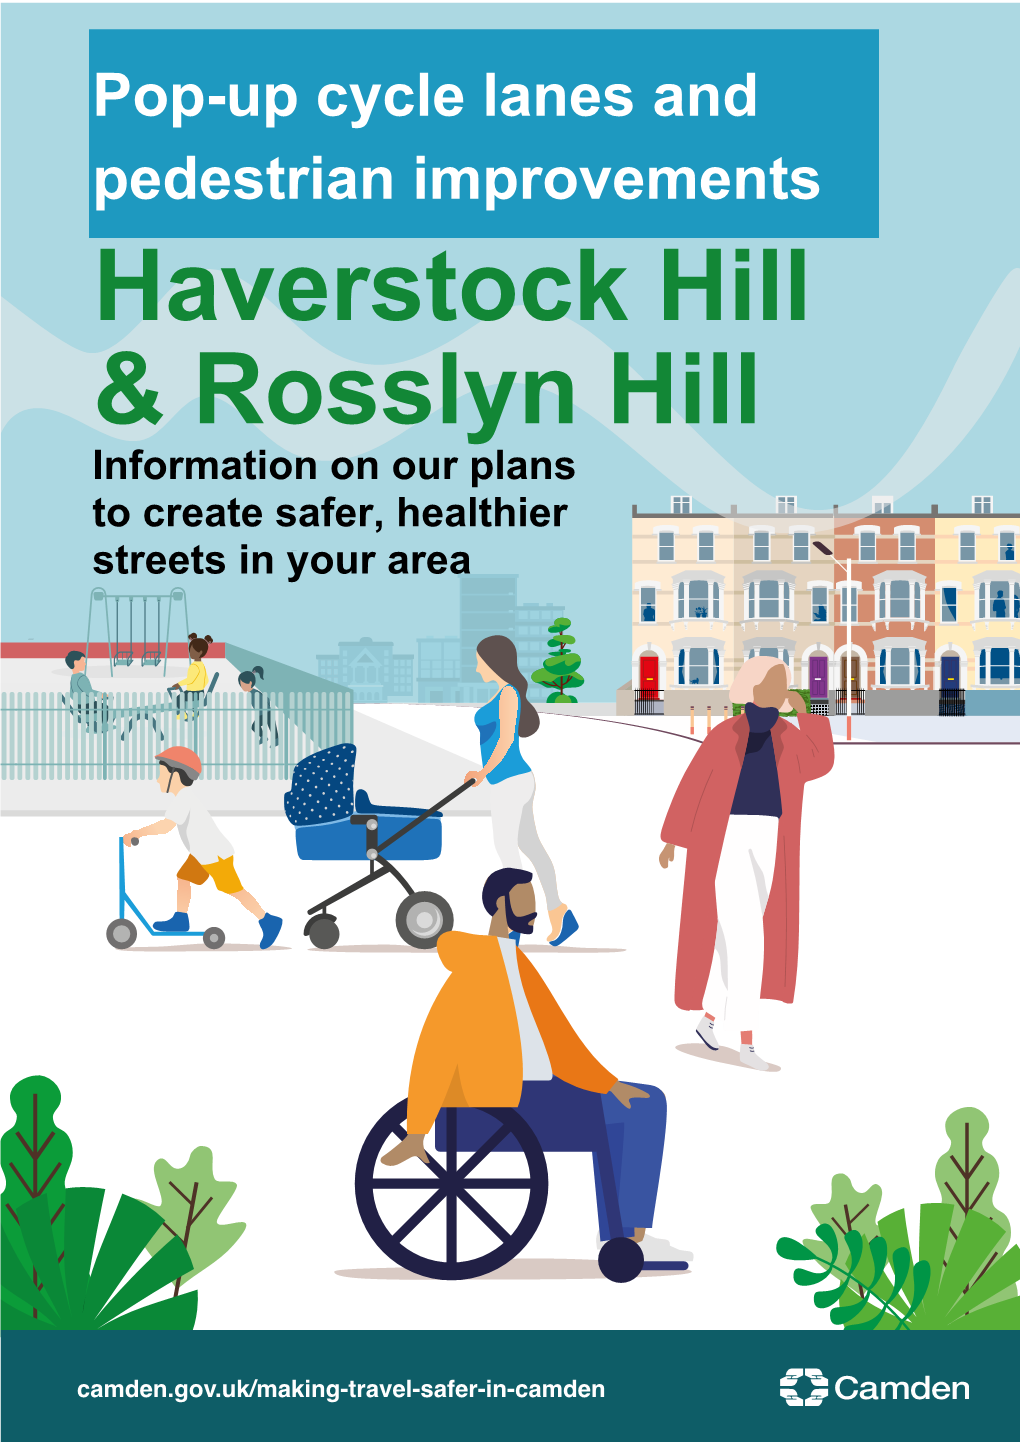 Haverstock Hill & Rosslyn Hill